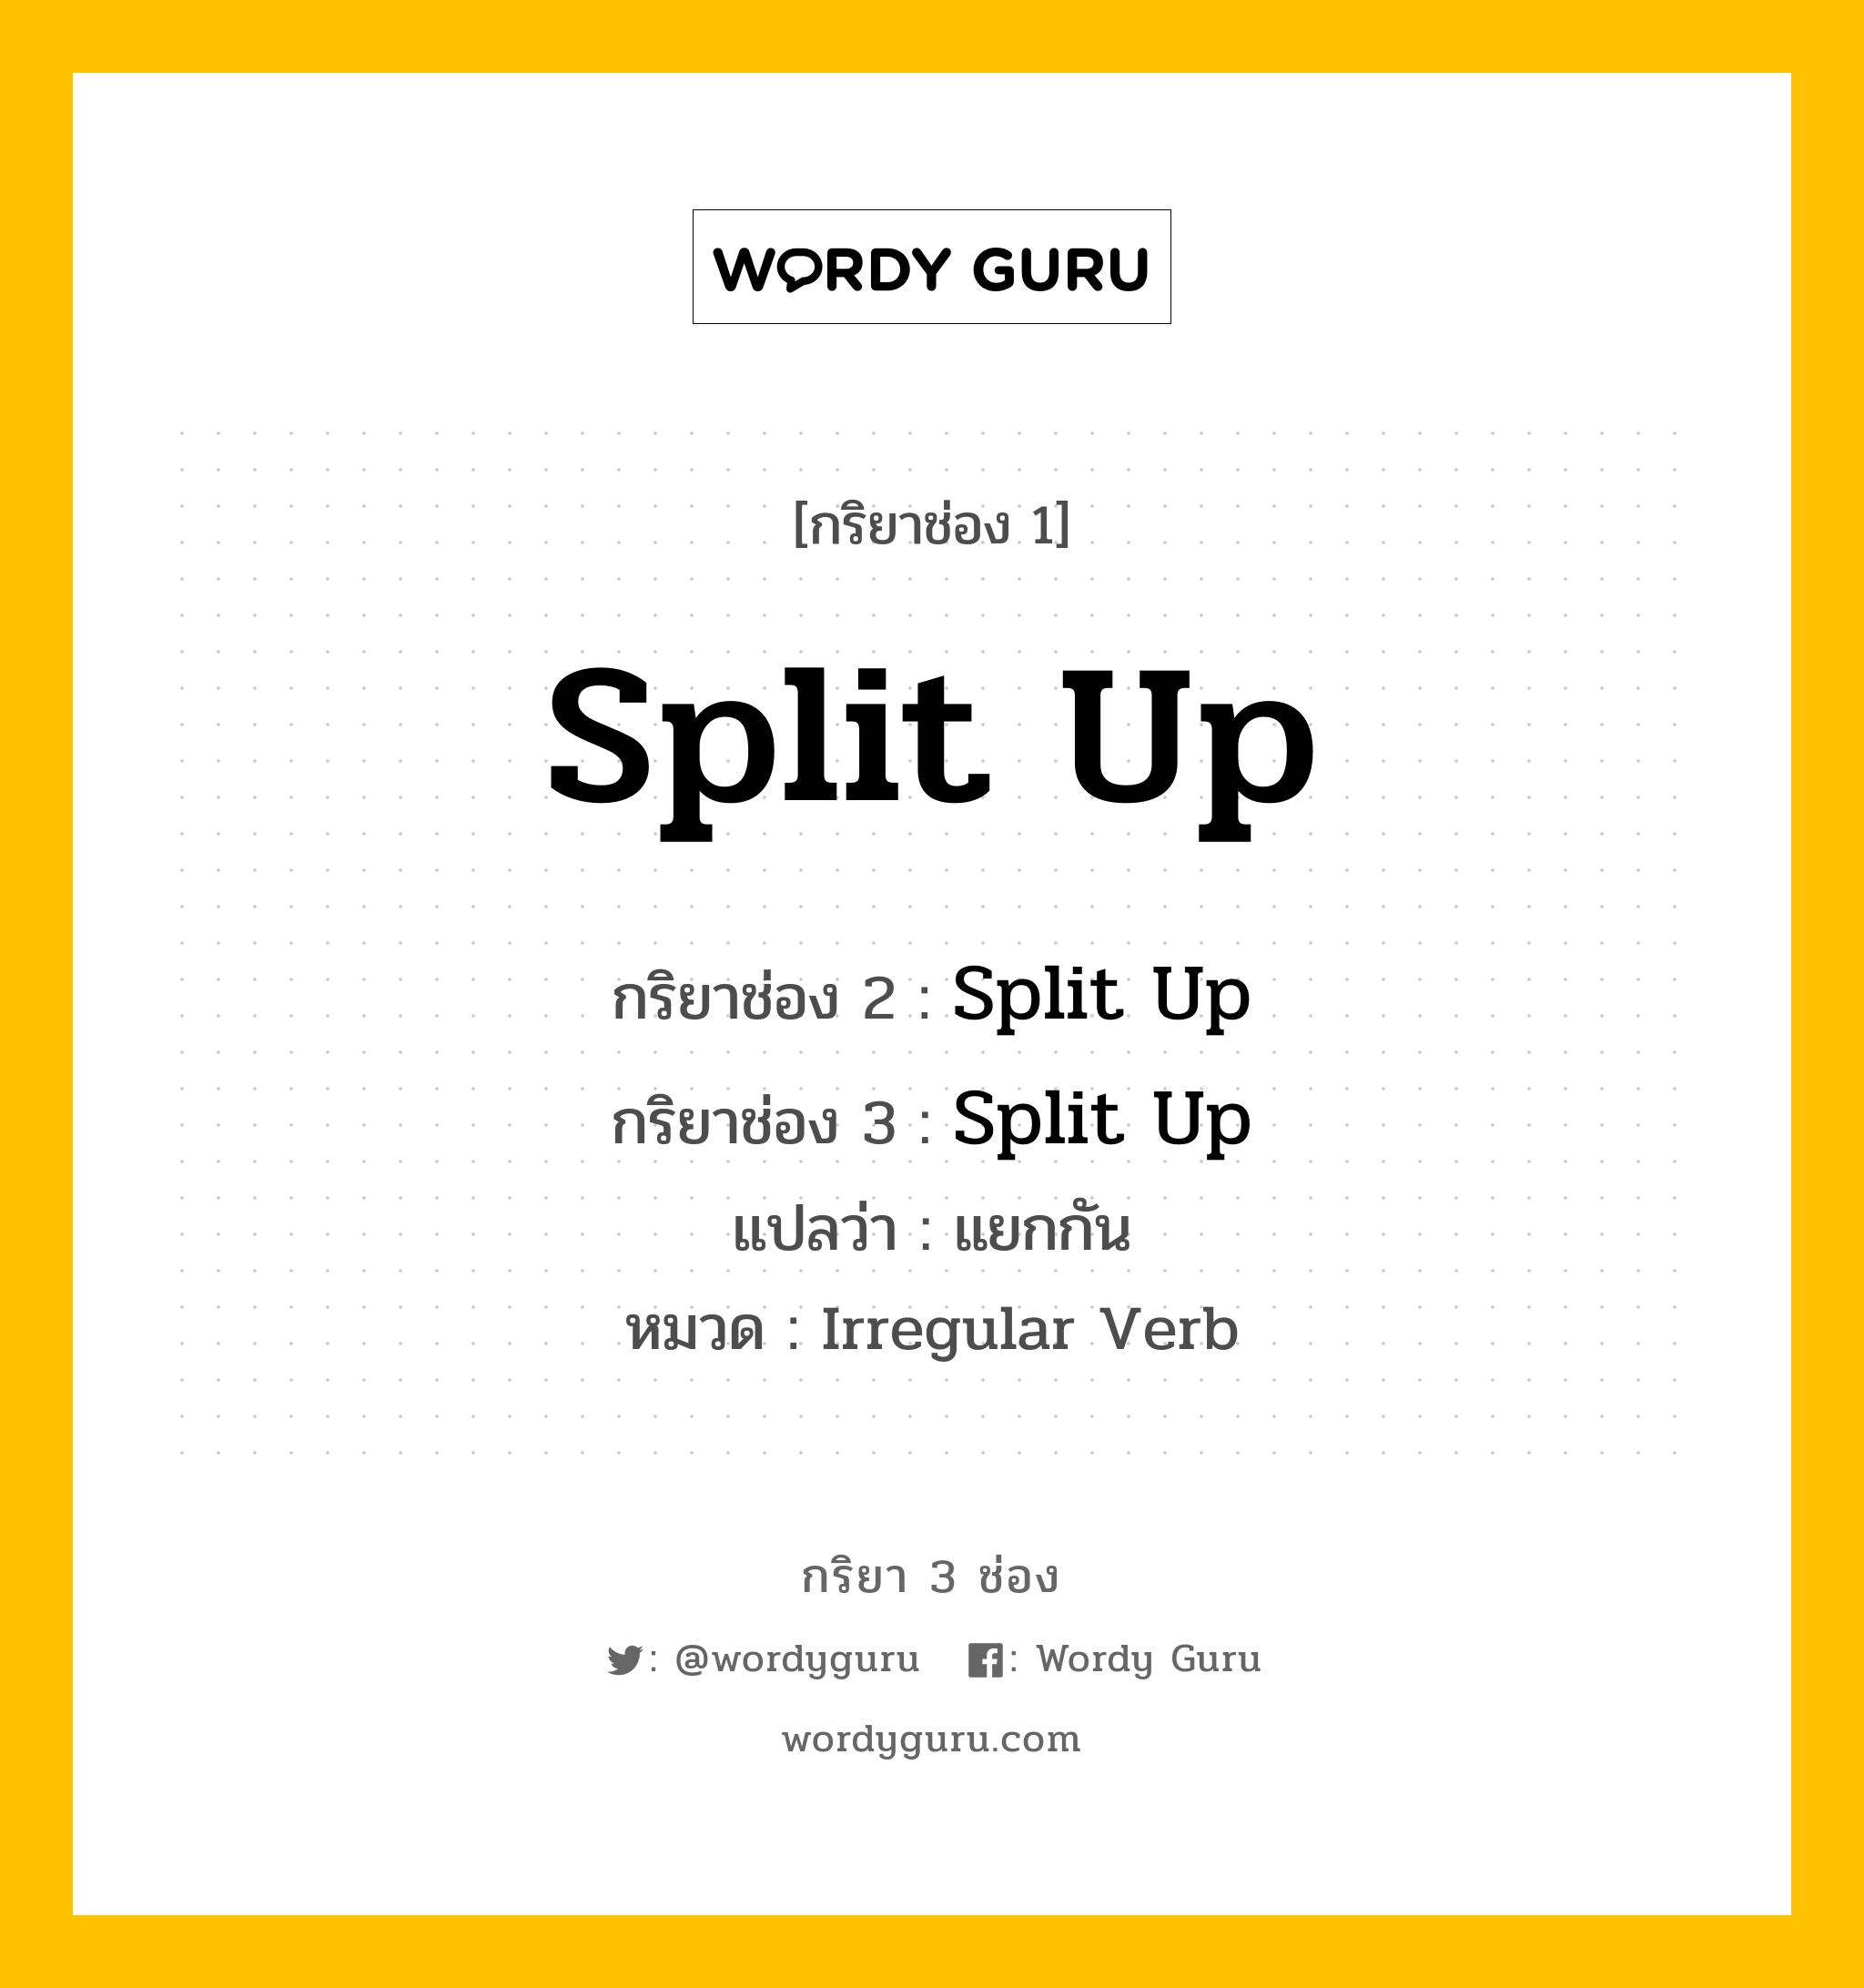 กริยา 3 ช่อง: Split Up ช่อง 2 Split Up ช่อง 3 คืออะไร, กริยาช่อง 1 Split Up กริยาช่อง 2 Split Up กริยาช่อง 3 Split Up แปลว่า แยกกัน หมวด Irregular Verb หมวด Irregular Verb